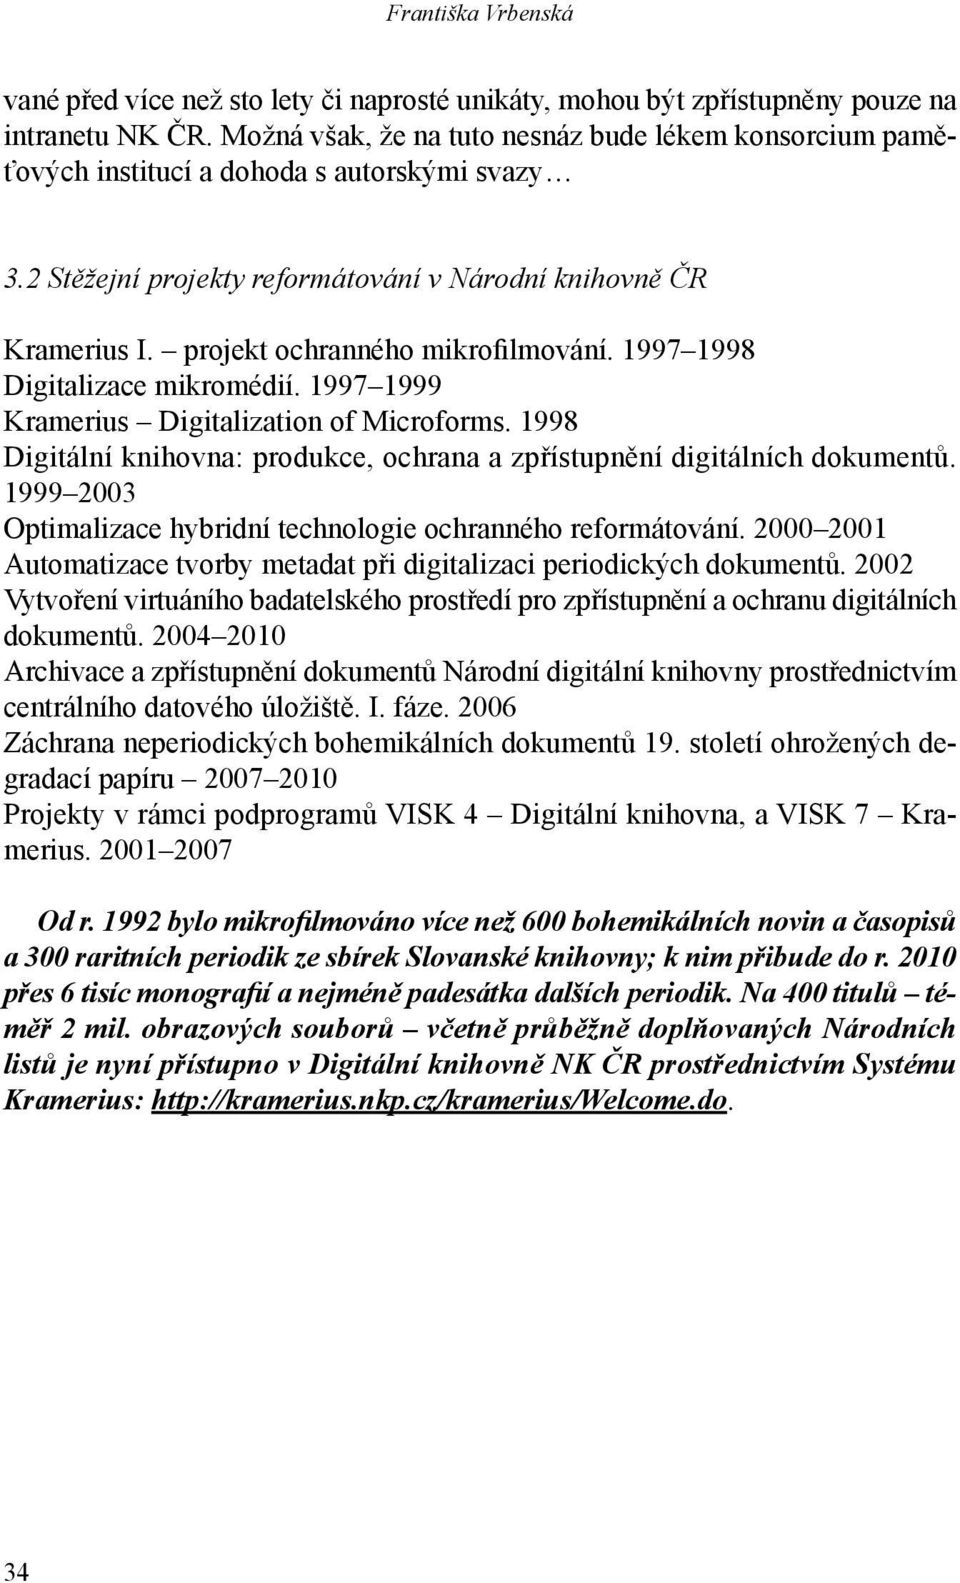 projekt ochranného mikrofilmování. 1997 1998 Digitalizace mikromédií. 1997 1999 Kramerius Digitalization of Microforms. 1998 Digitální knihovna: produkce, ochrana a zpřístupnění digitálních dokumentů.